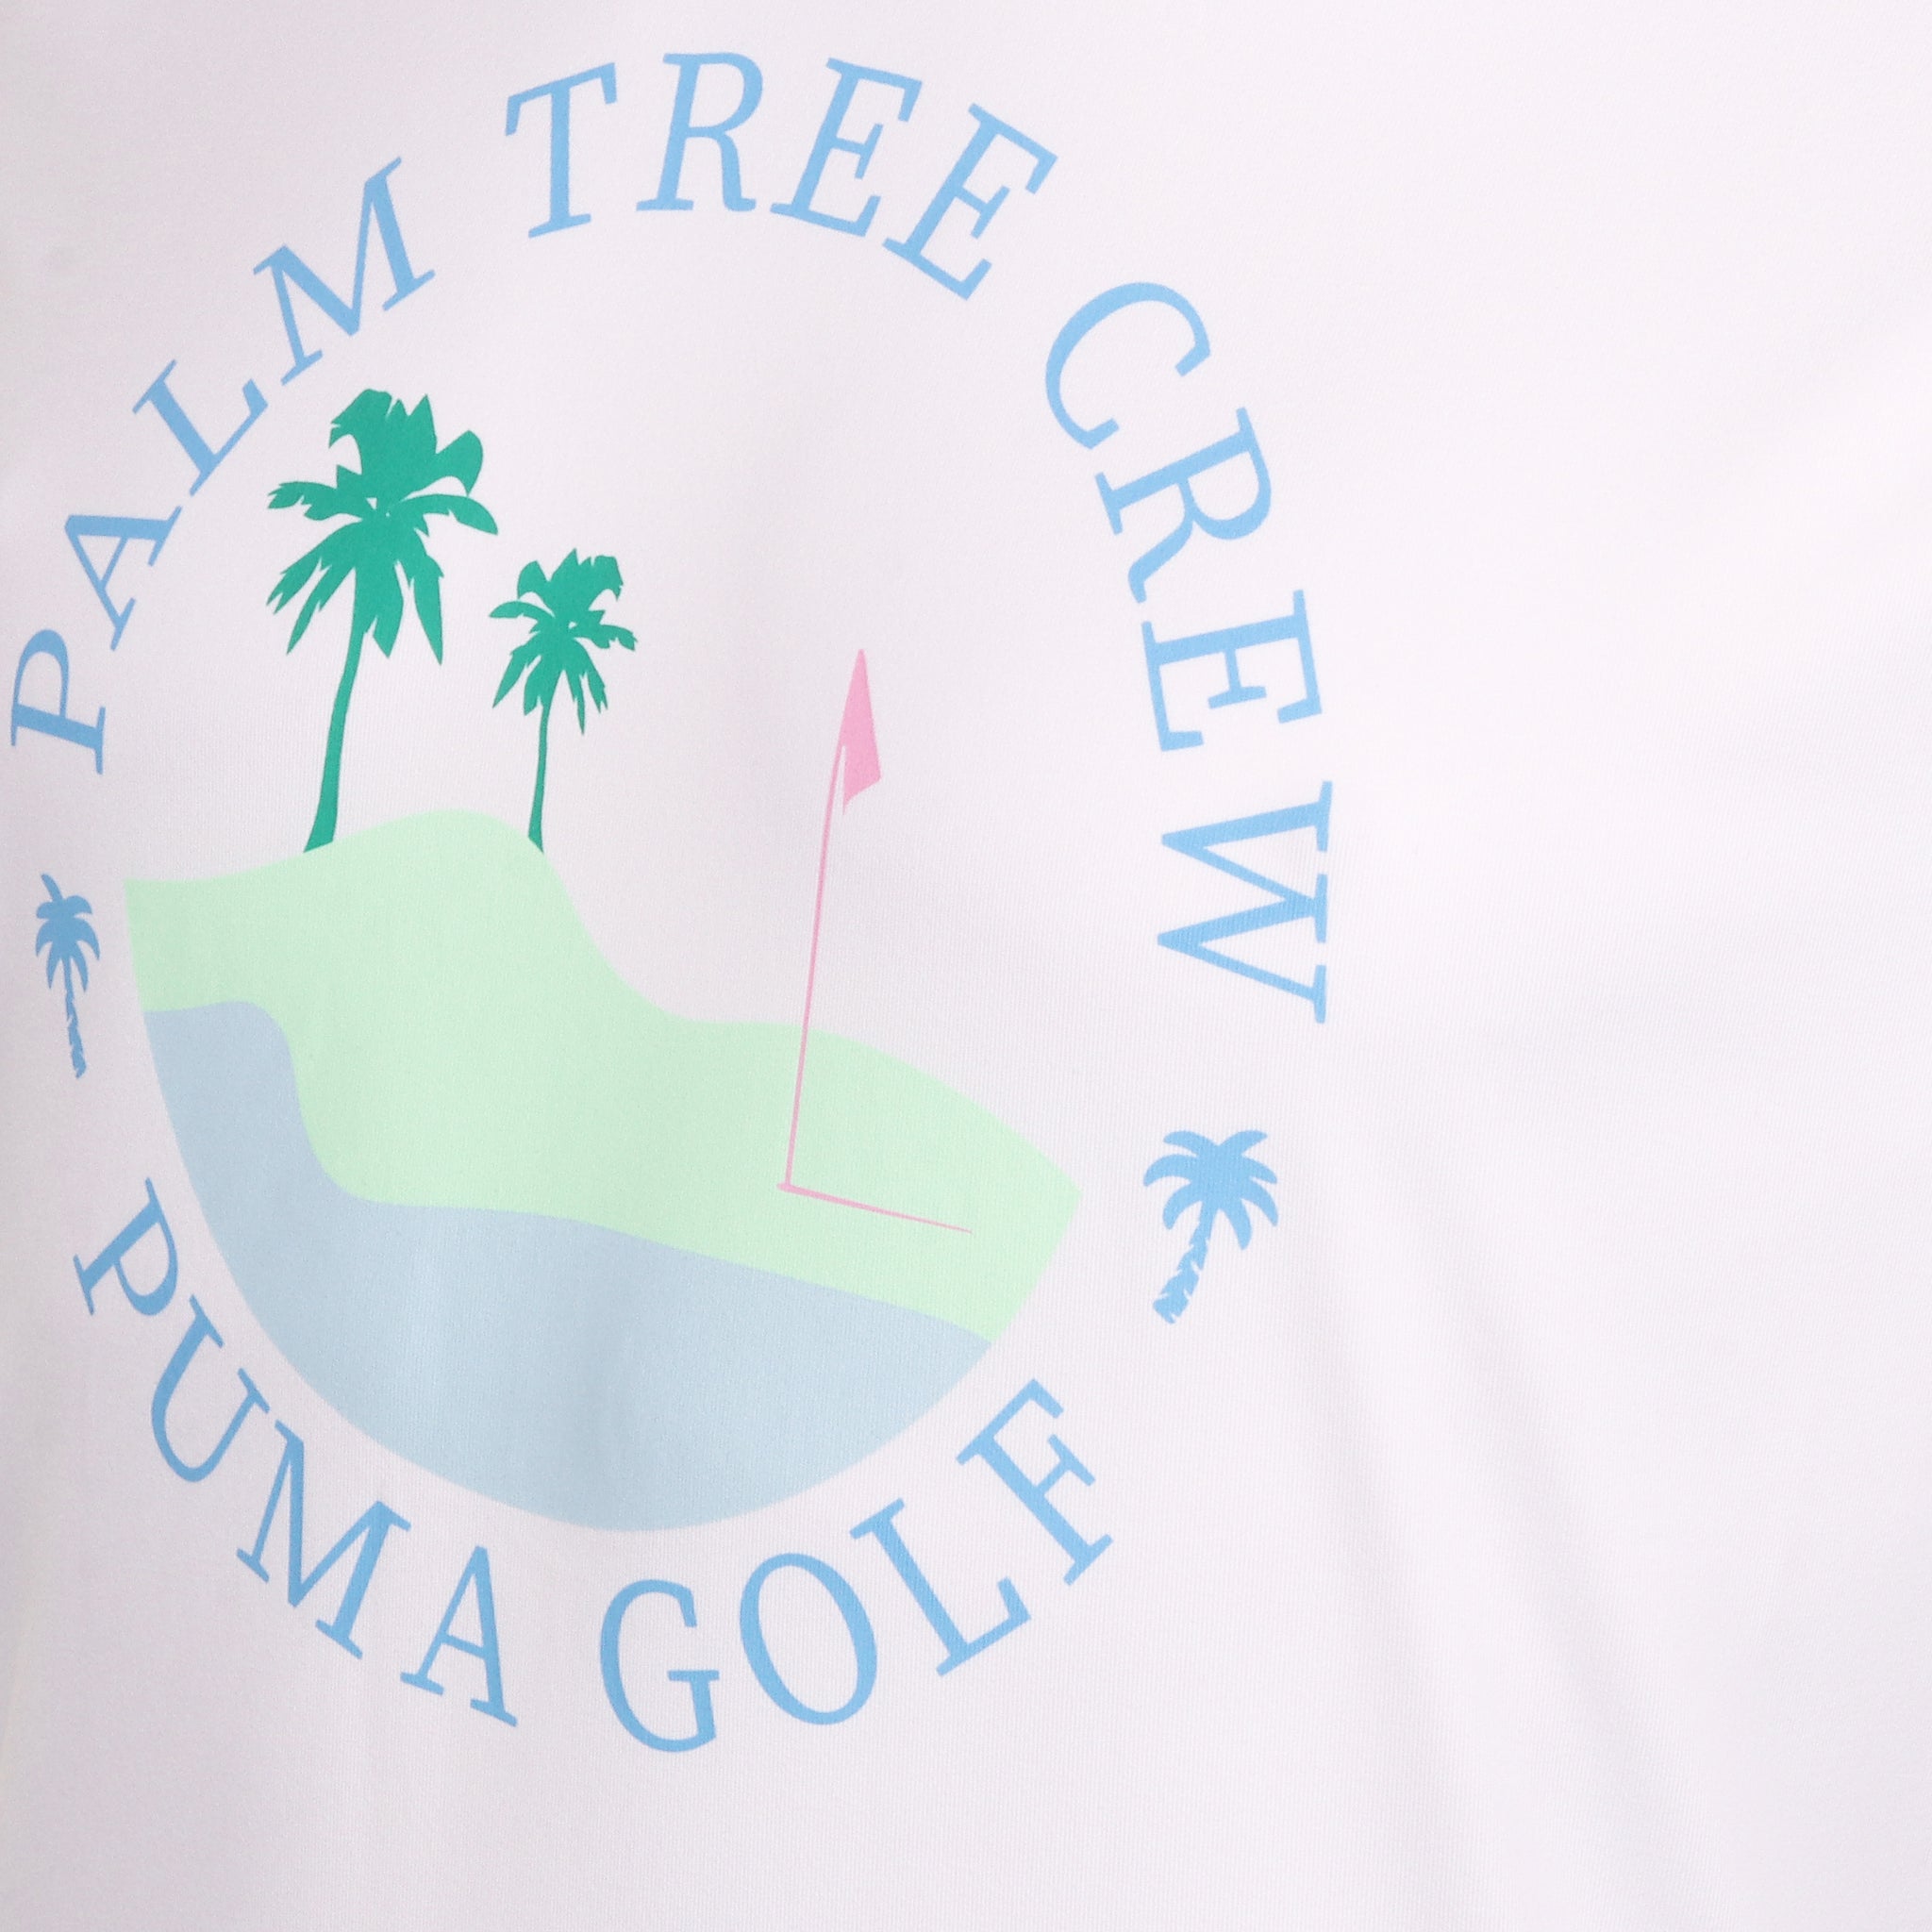 puma-golf-x-ptc-island-tee-623973-white-glow-01